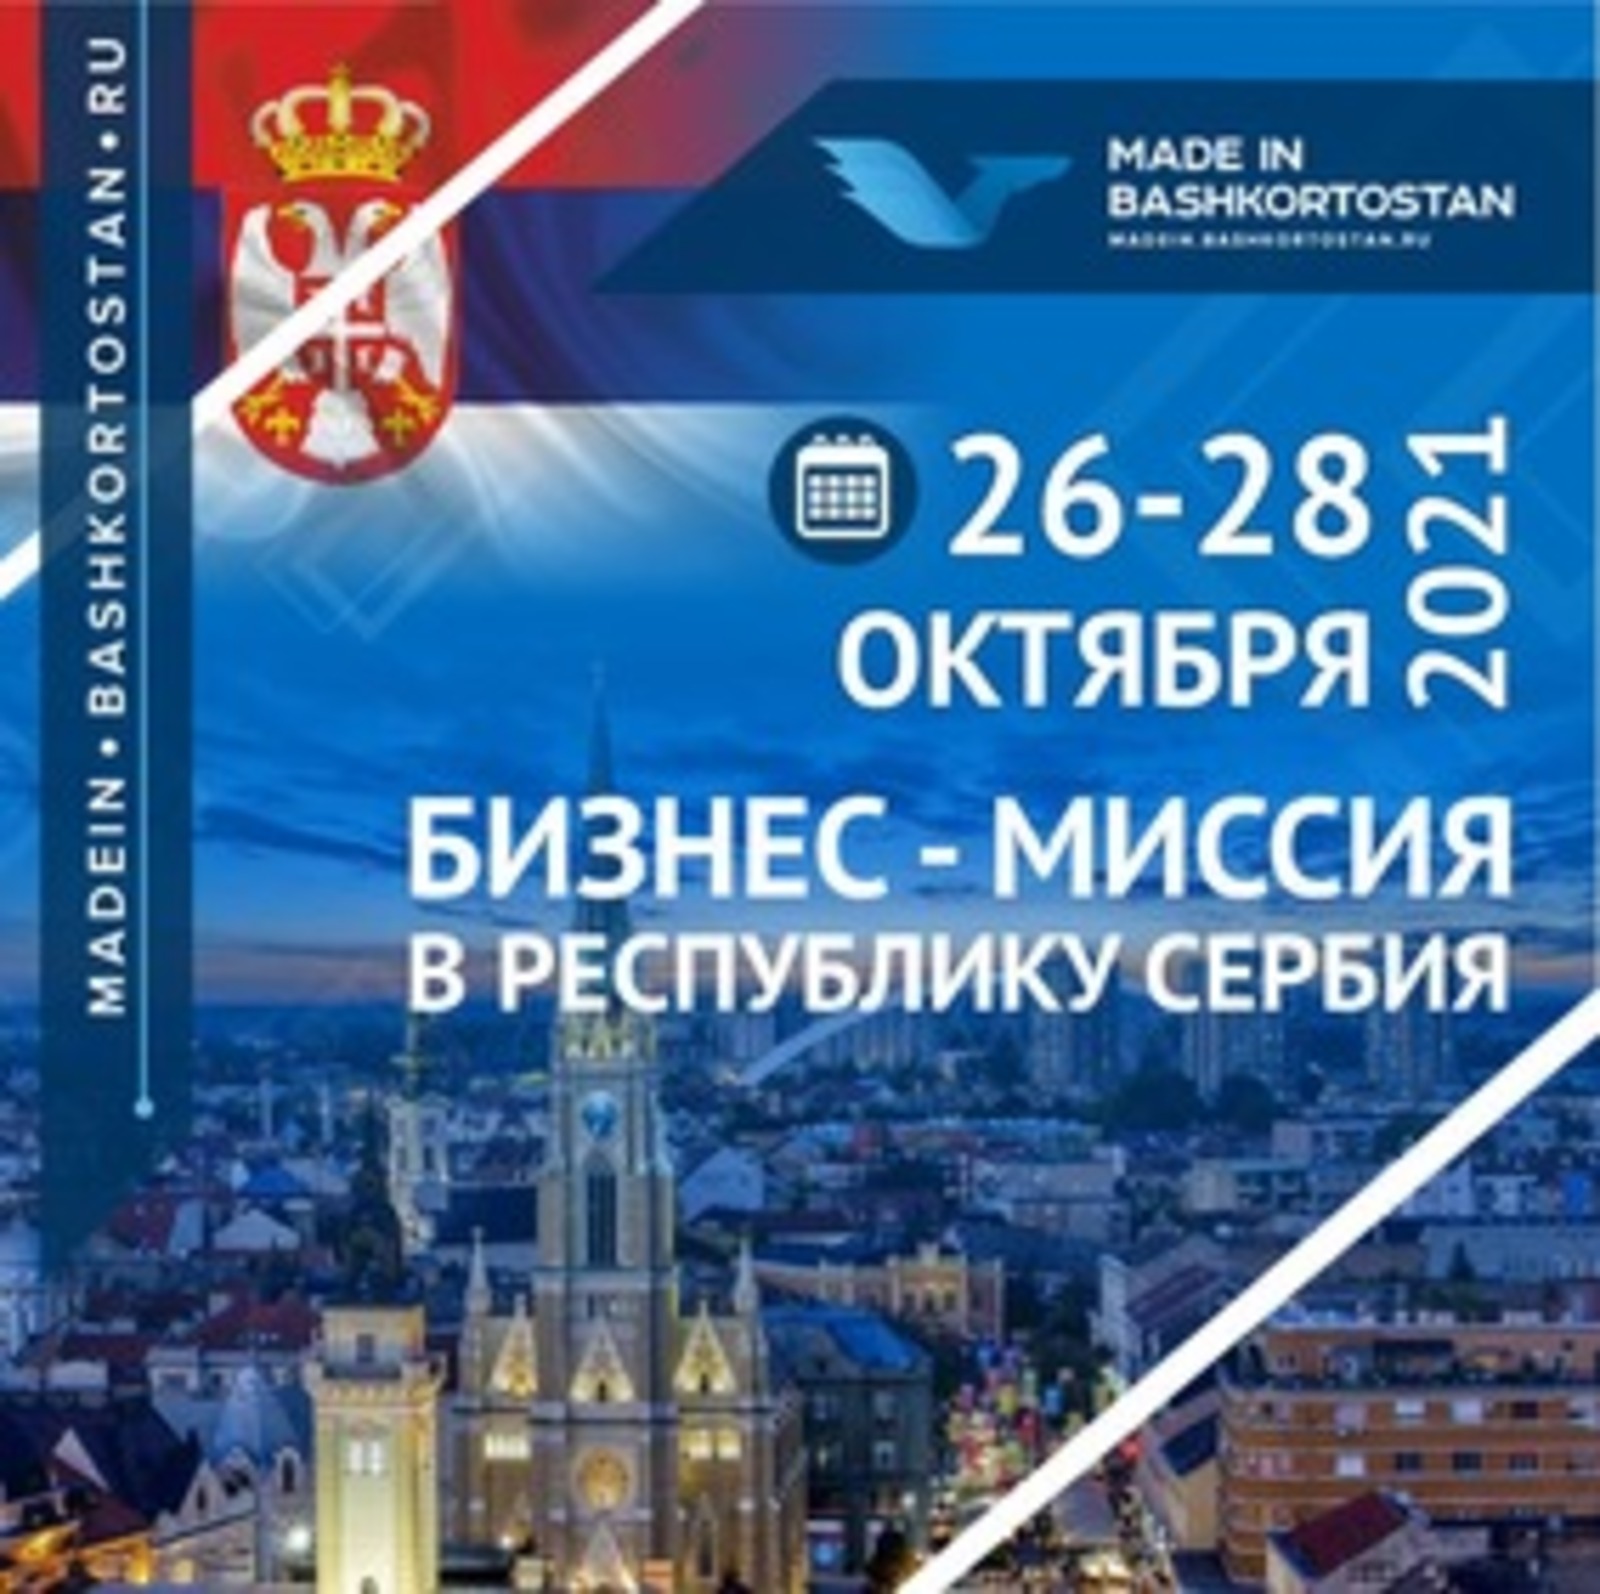 Приглашаем компании для участия в бизнес-миссии в Республику Сербия